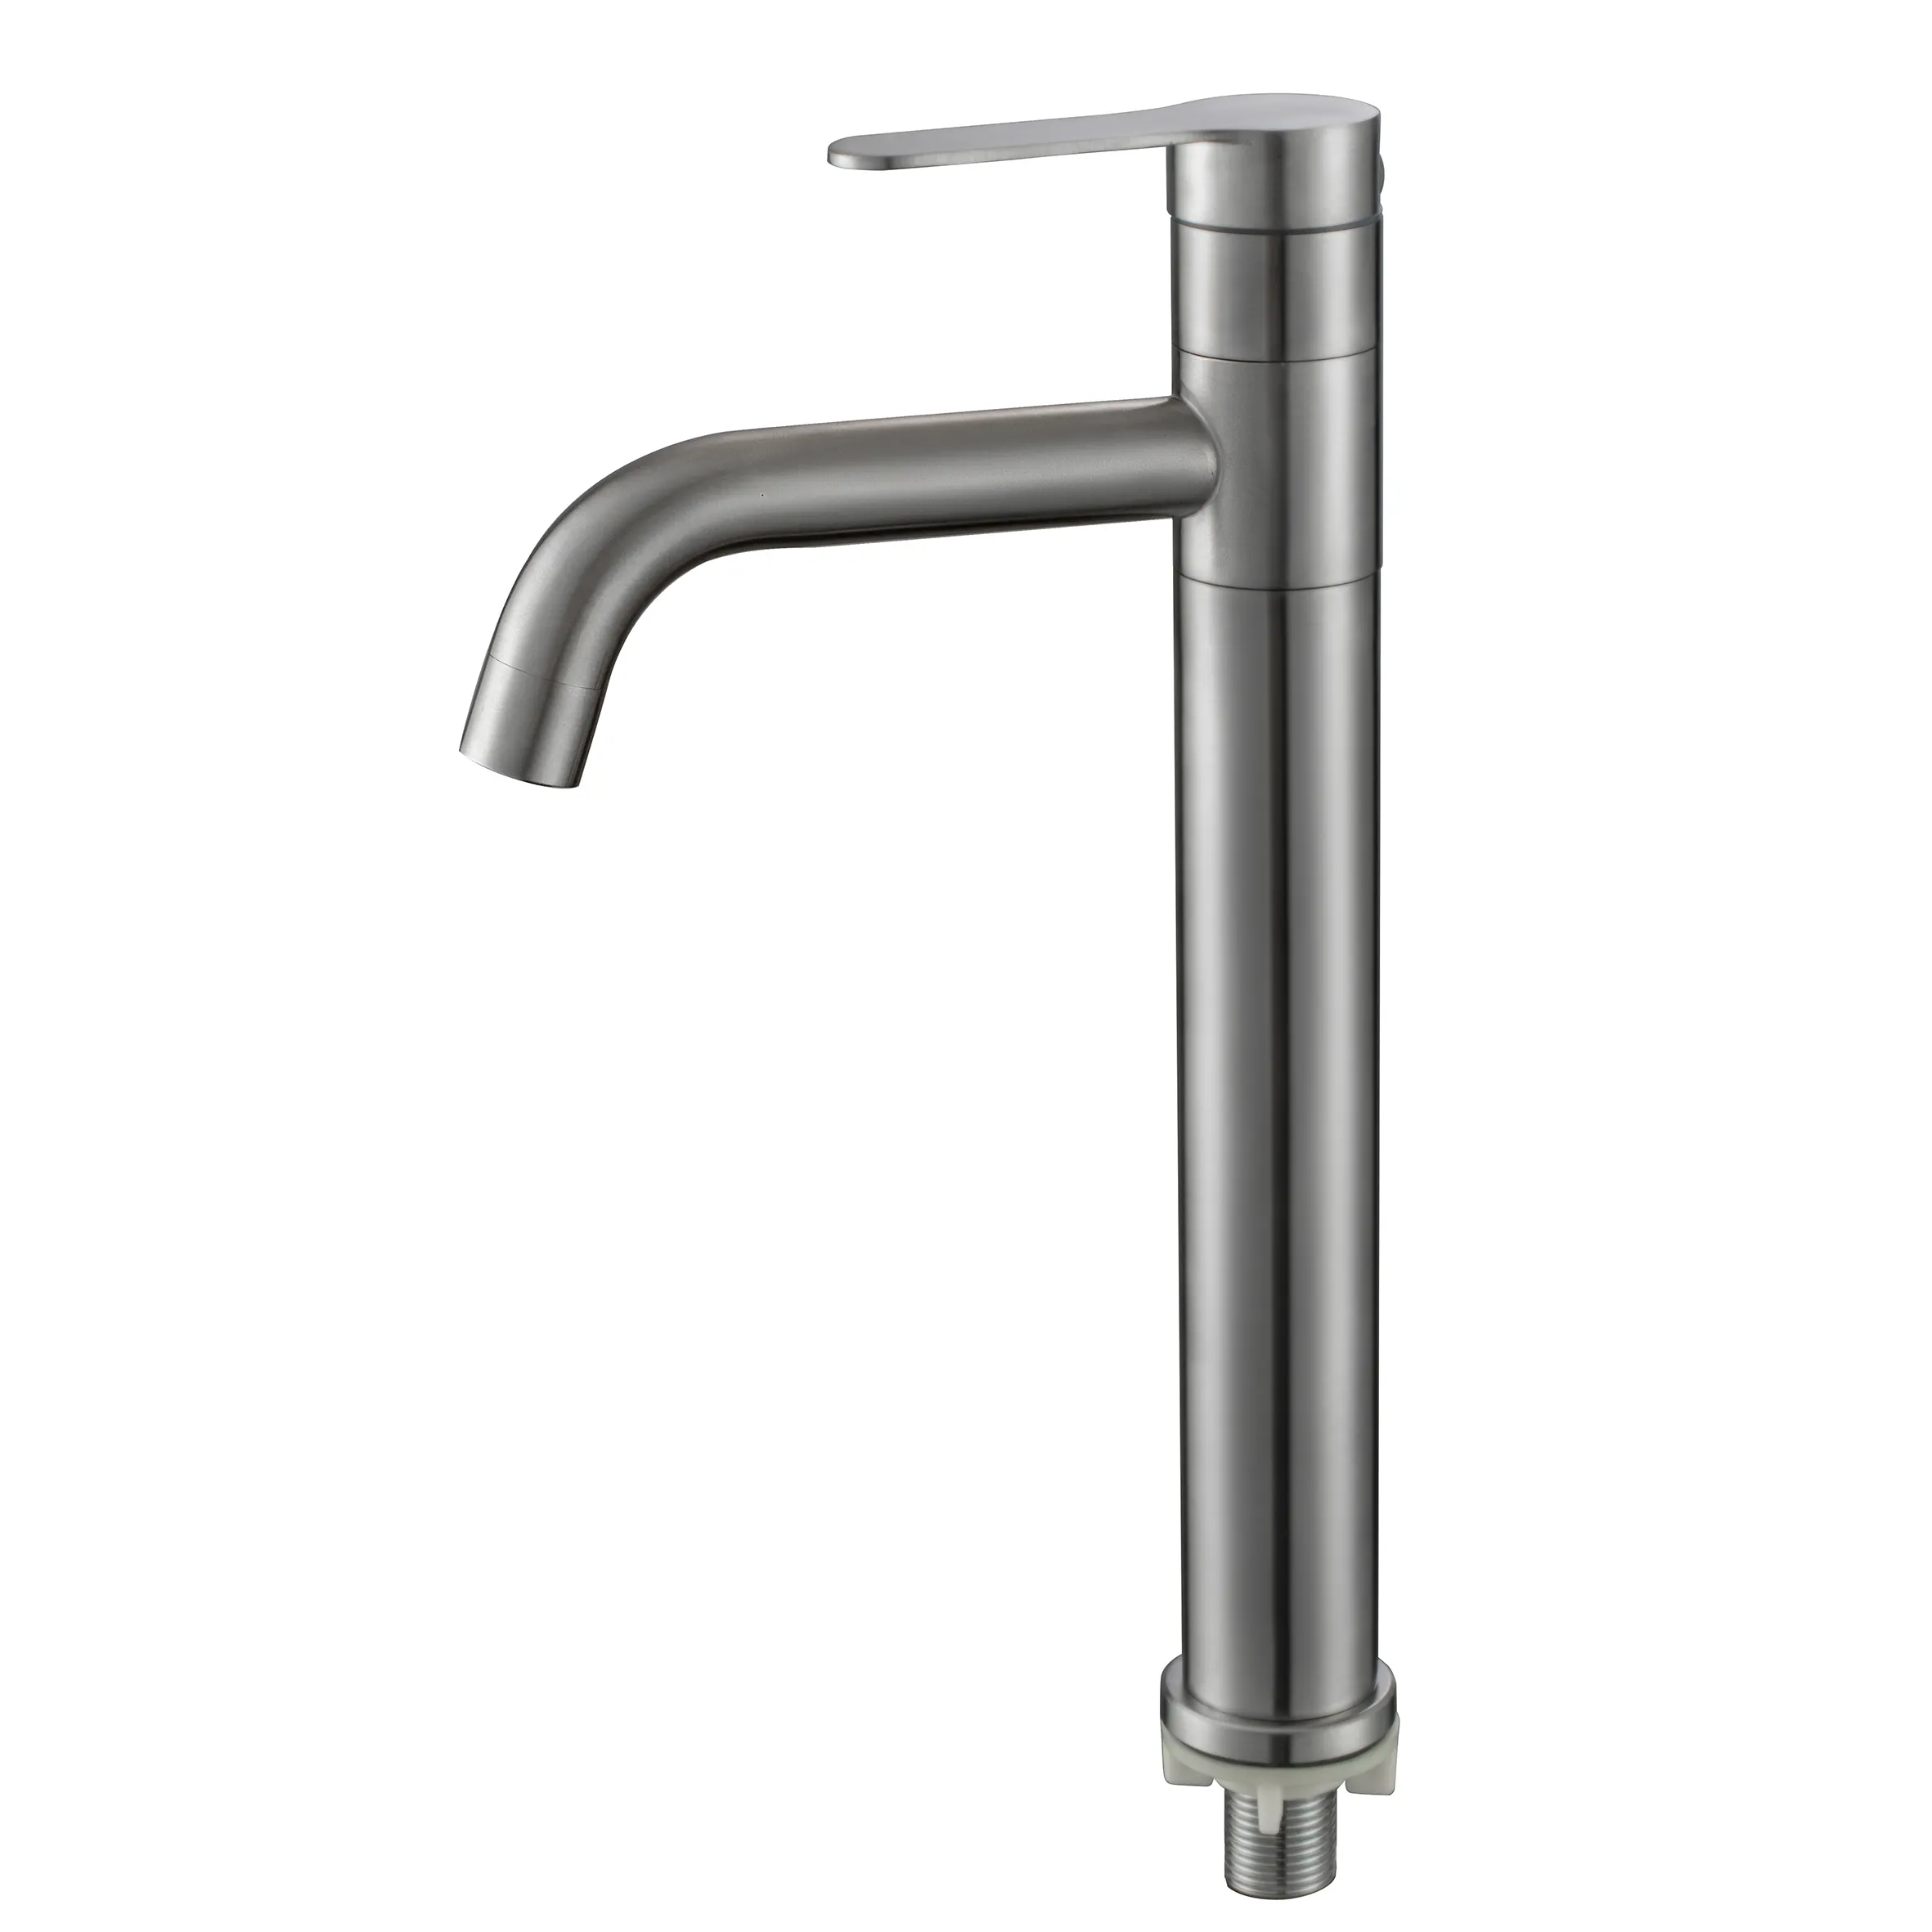 Lavabo in acciaio inossidabile di alta qualità ed economico sopra il rubinetto del lavabo 360 rubinetto per lavabo singolo freddo rotante